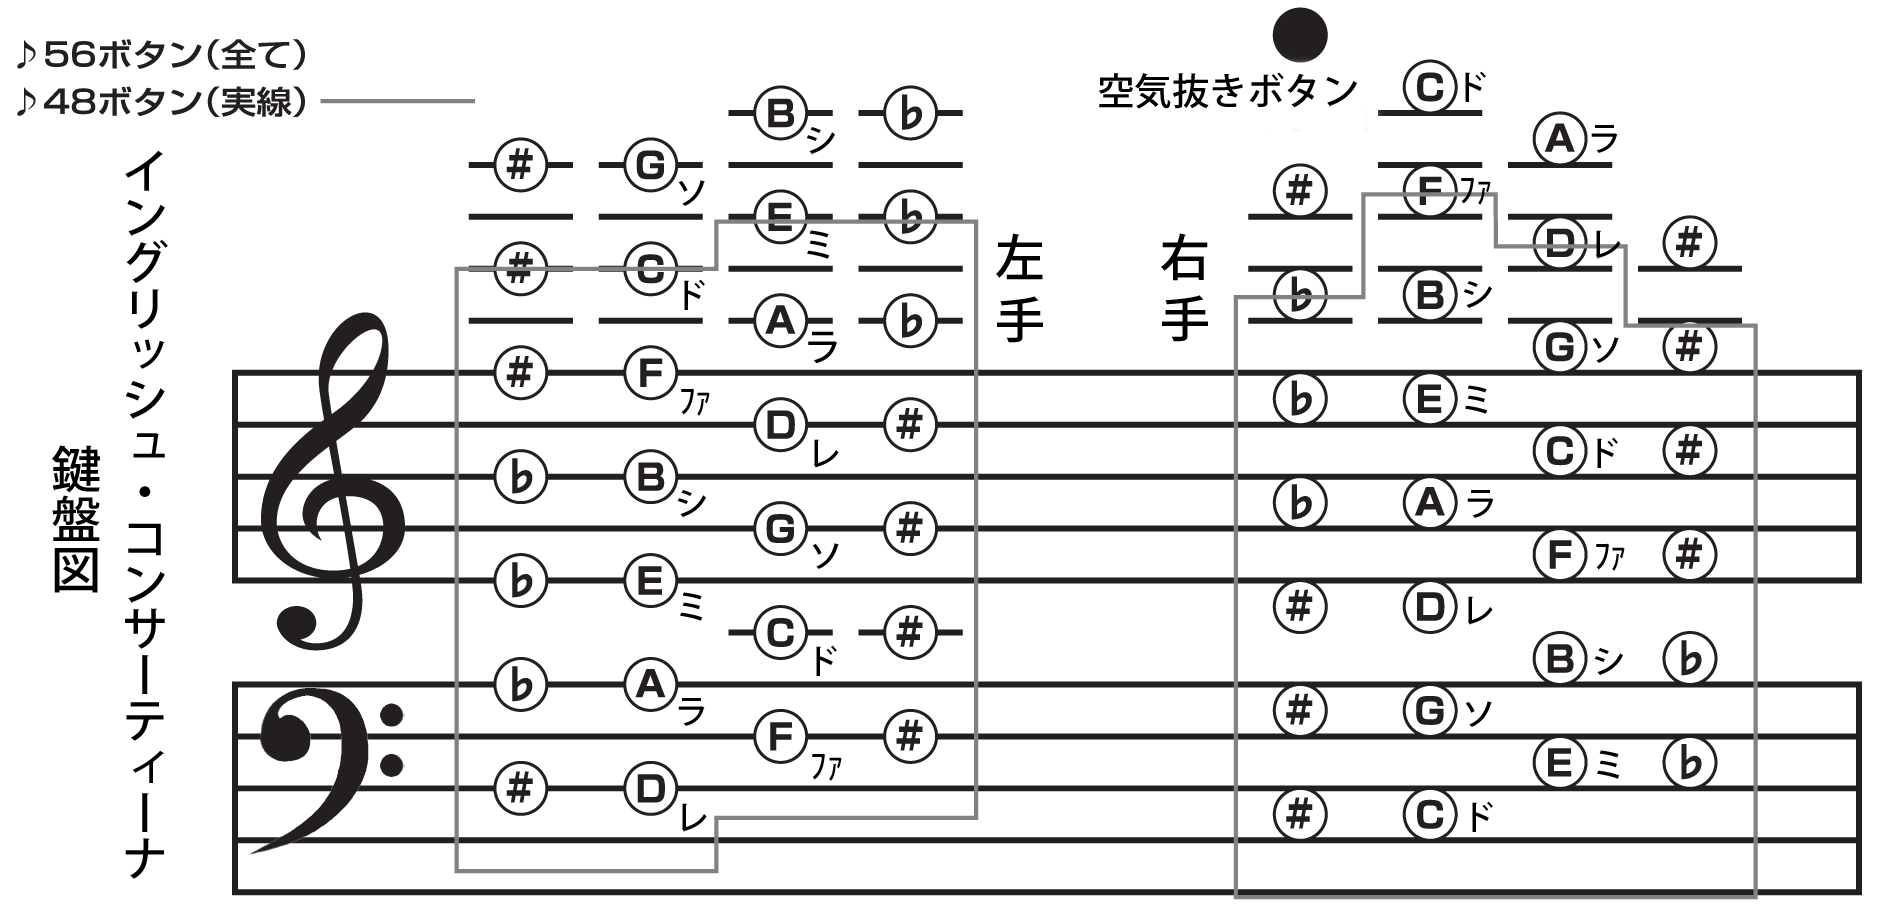 コンサーティーナ 入門,For Beginners of the Anglo Concertina,KATO Toru